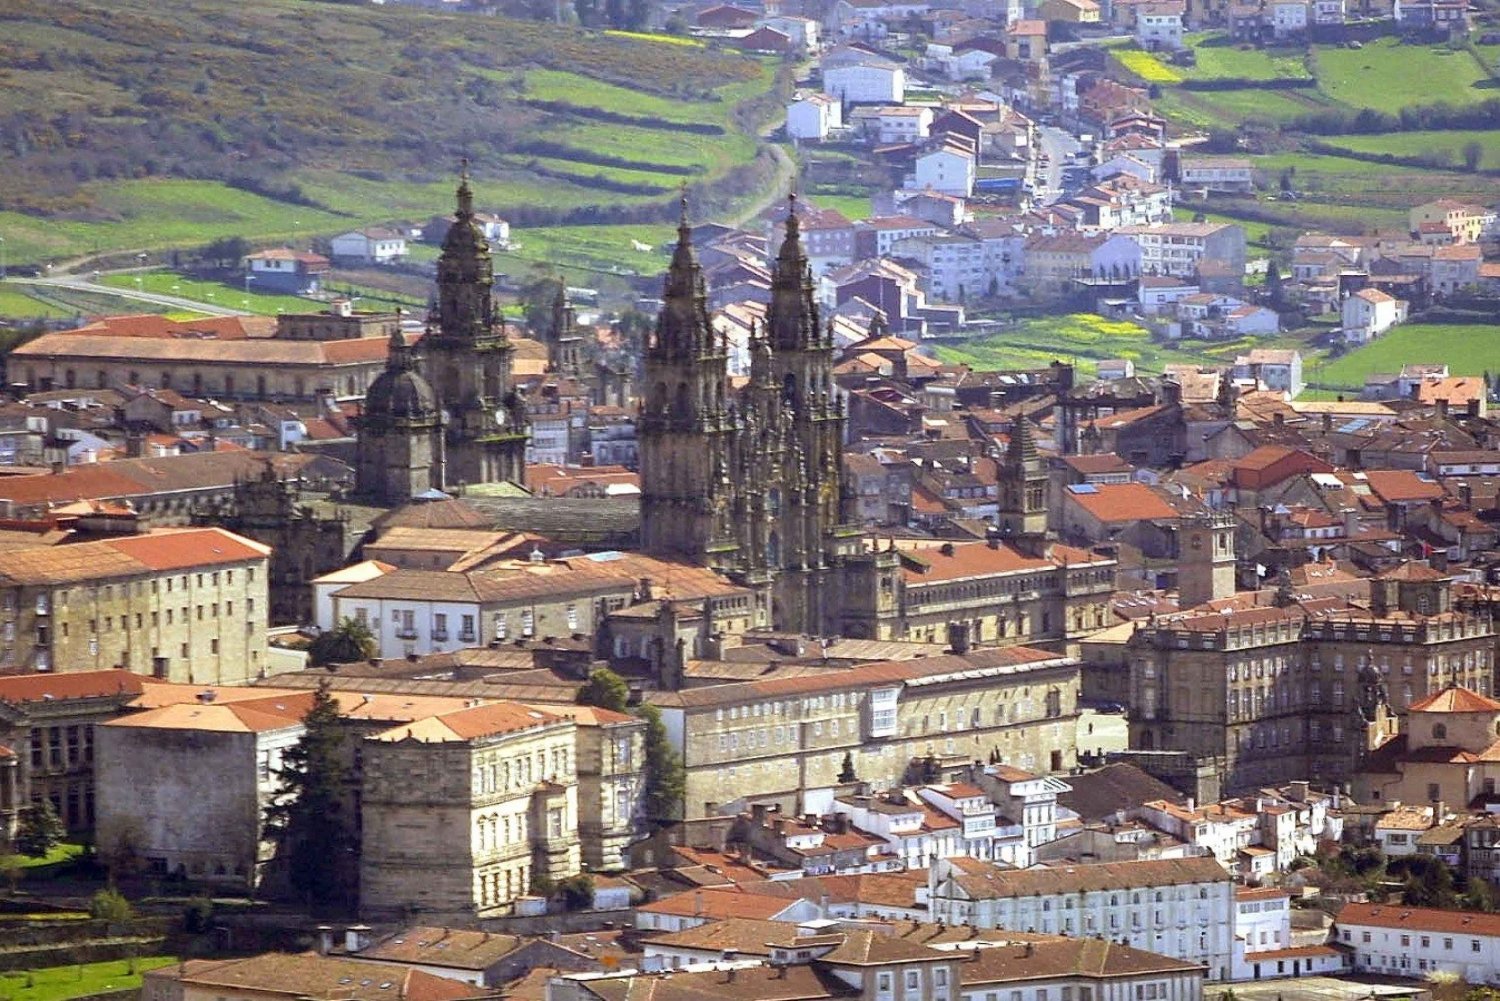 Santiago de Compostela Private Tour from Lisbon